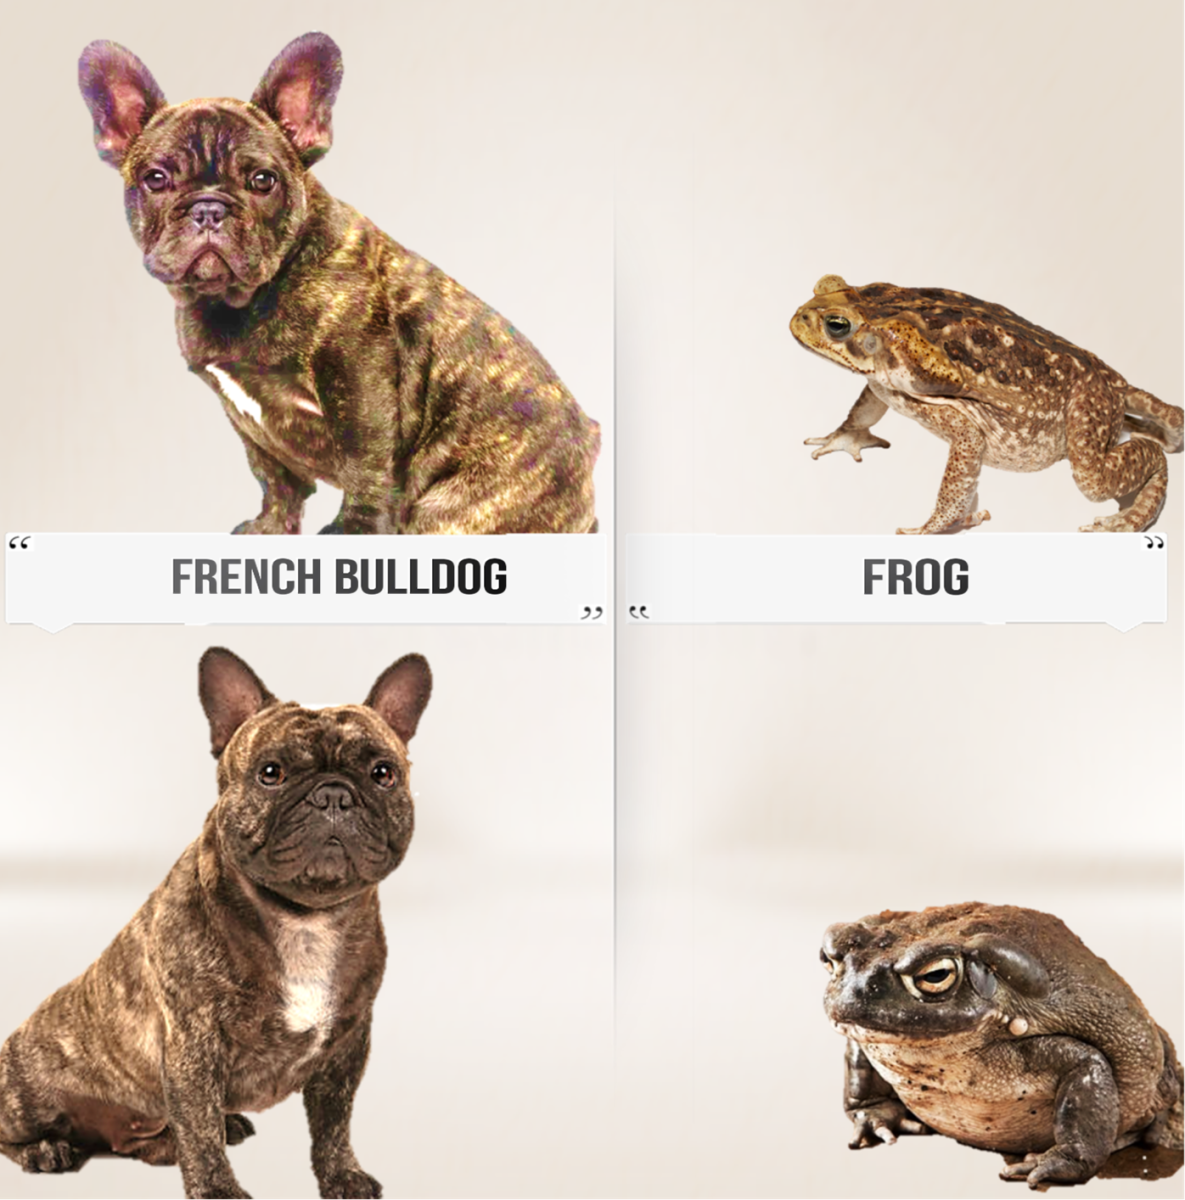 French Bulldog (Nick Name, Frog Dog)